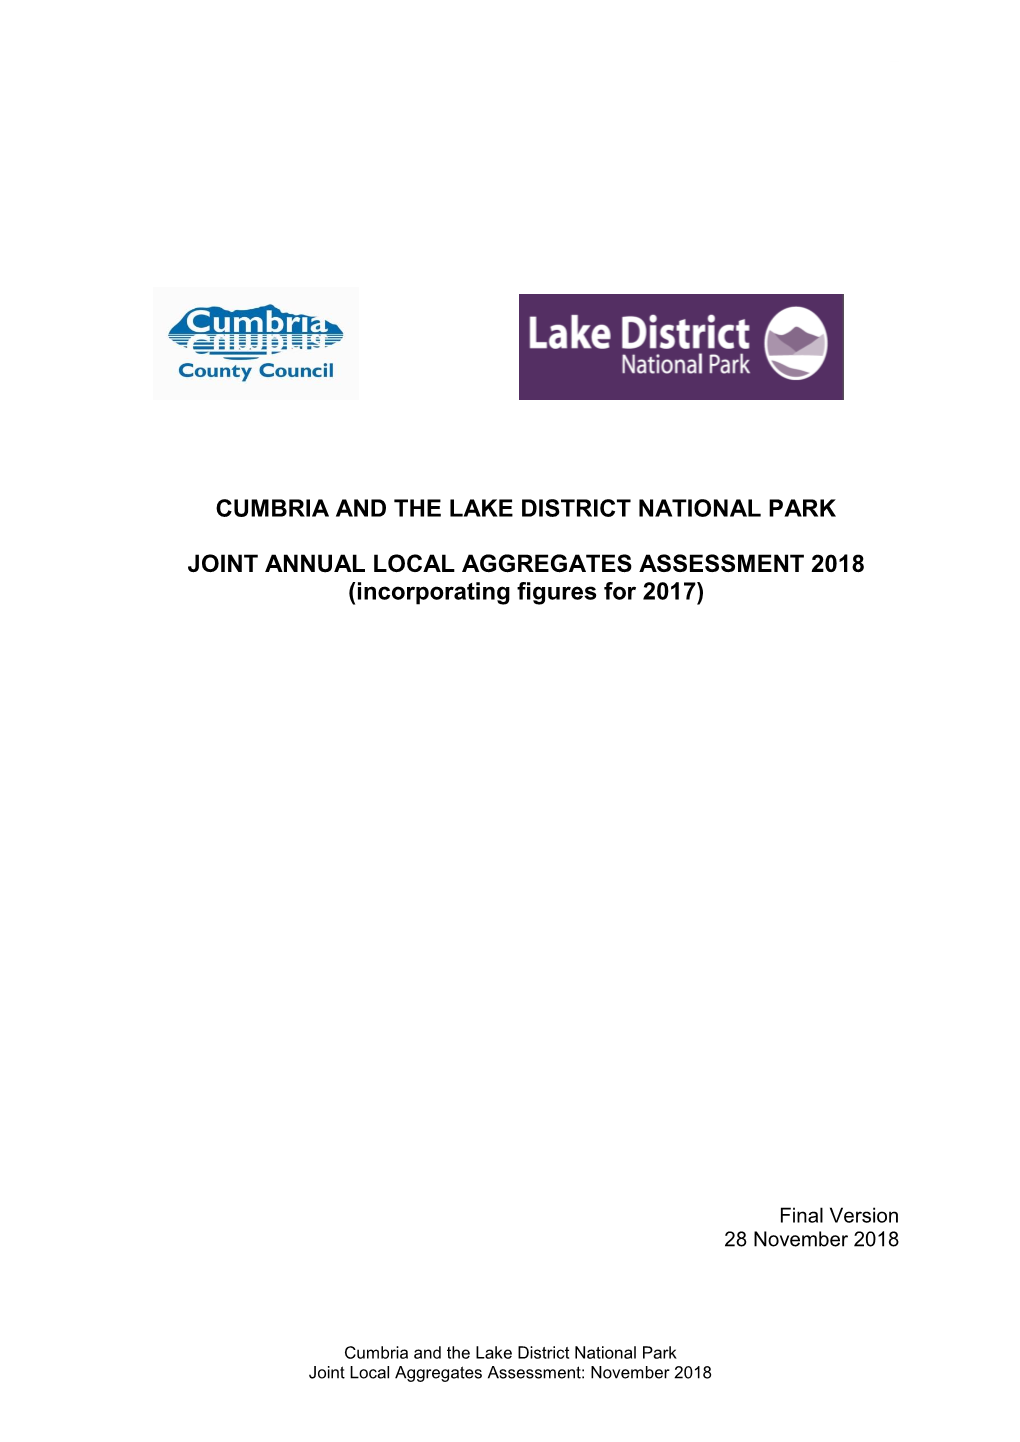 Cumbria Local Aggregates Assessment 2018 Full Report